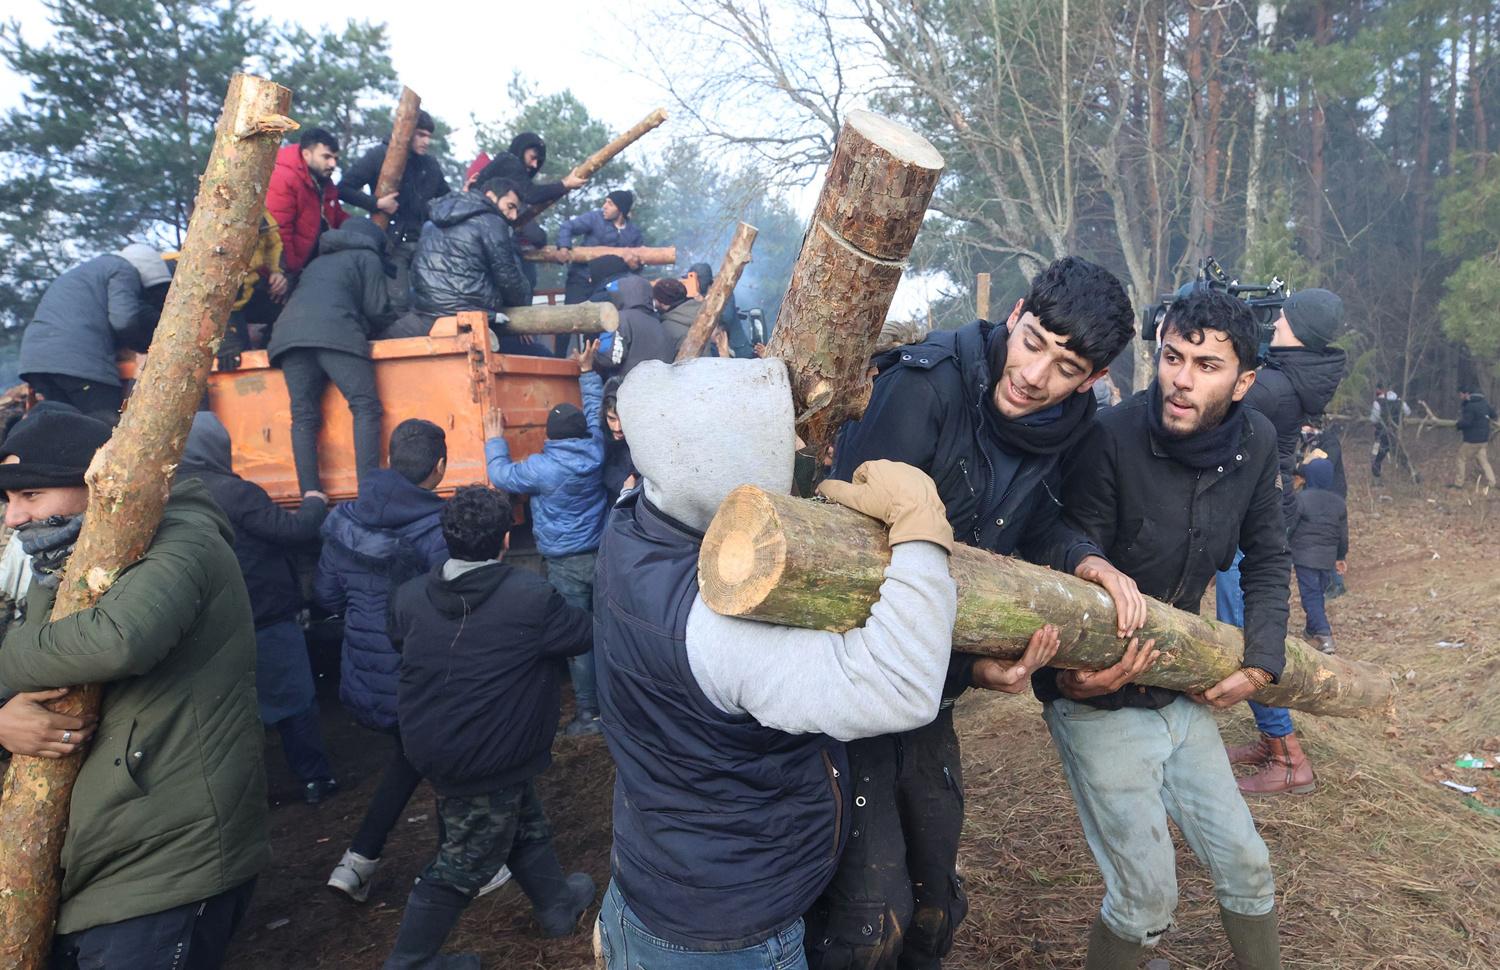 Livraison de bois de chauffage dans un camp de migrants à la frontière bélarusse, le 12 novembre 2021